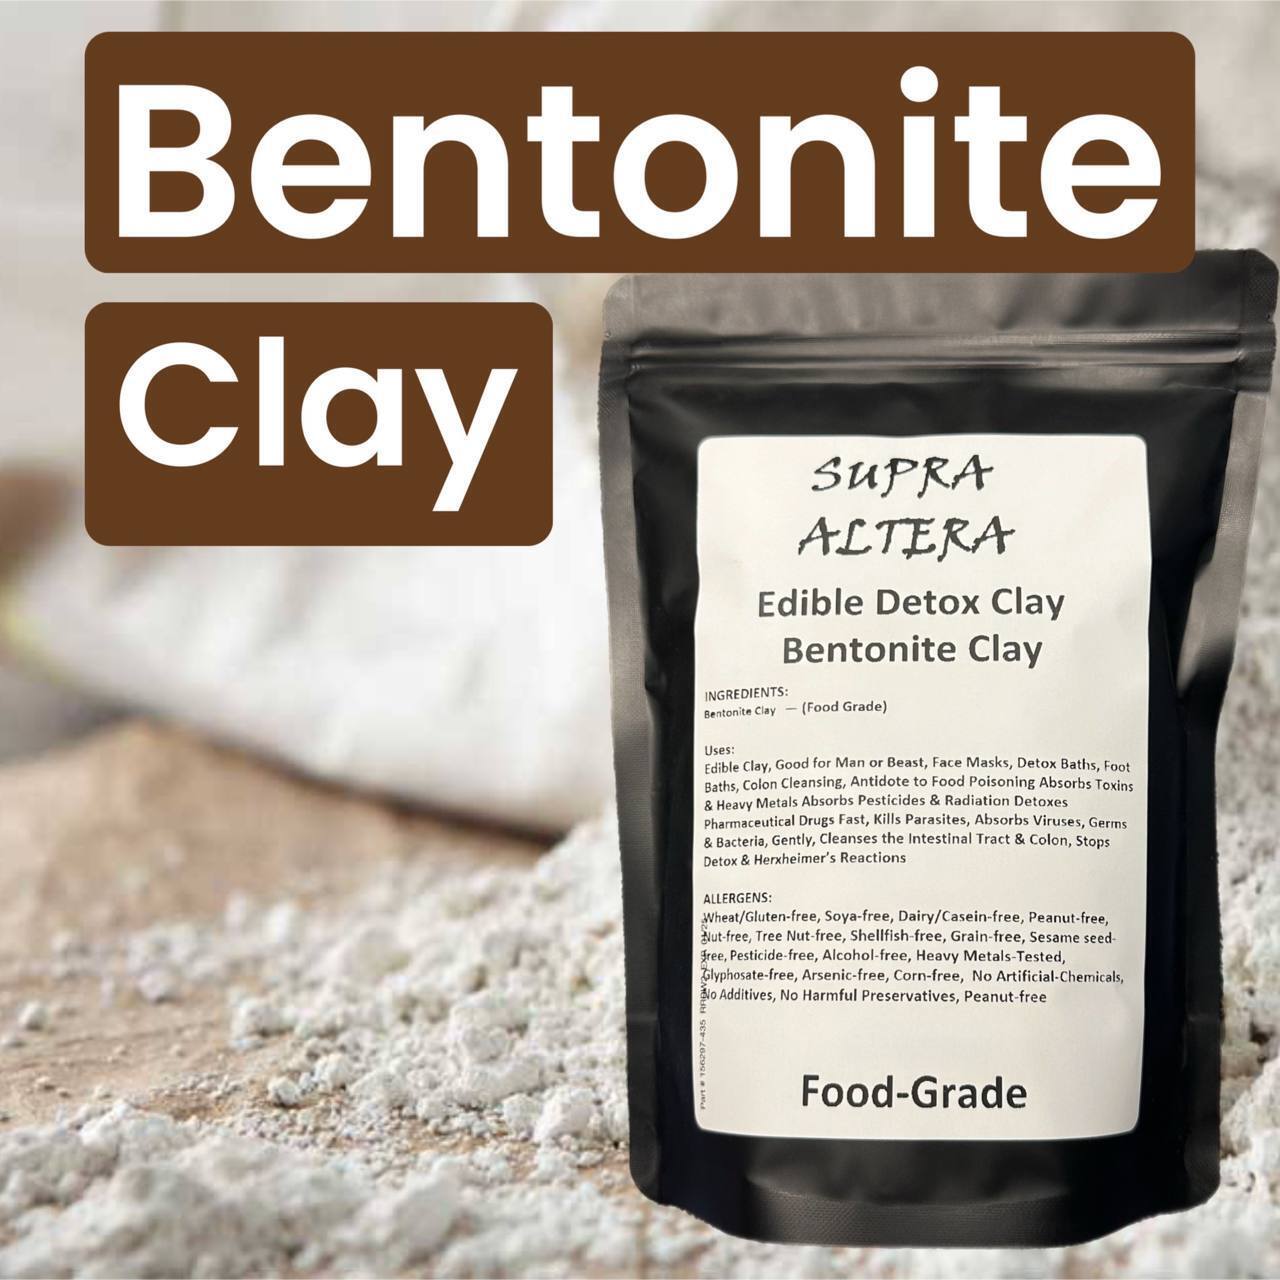 SUPRA ALTERA: Bentonite Clay (1 lb.) Edible Detox Clay — Food Grade — FAST SHIP